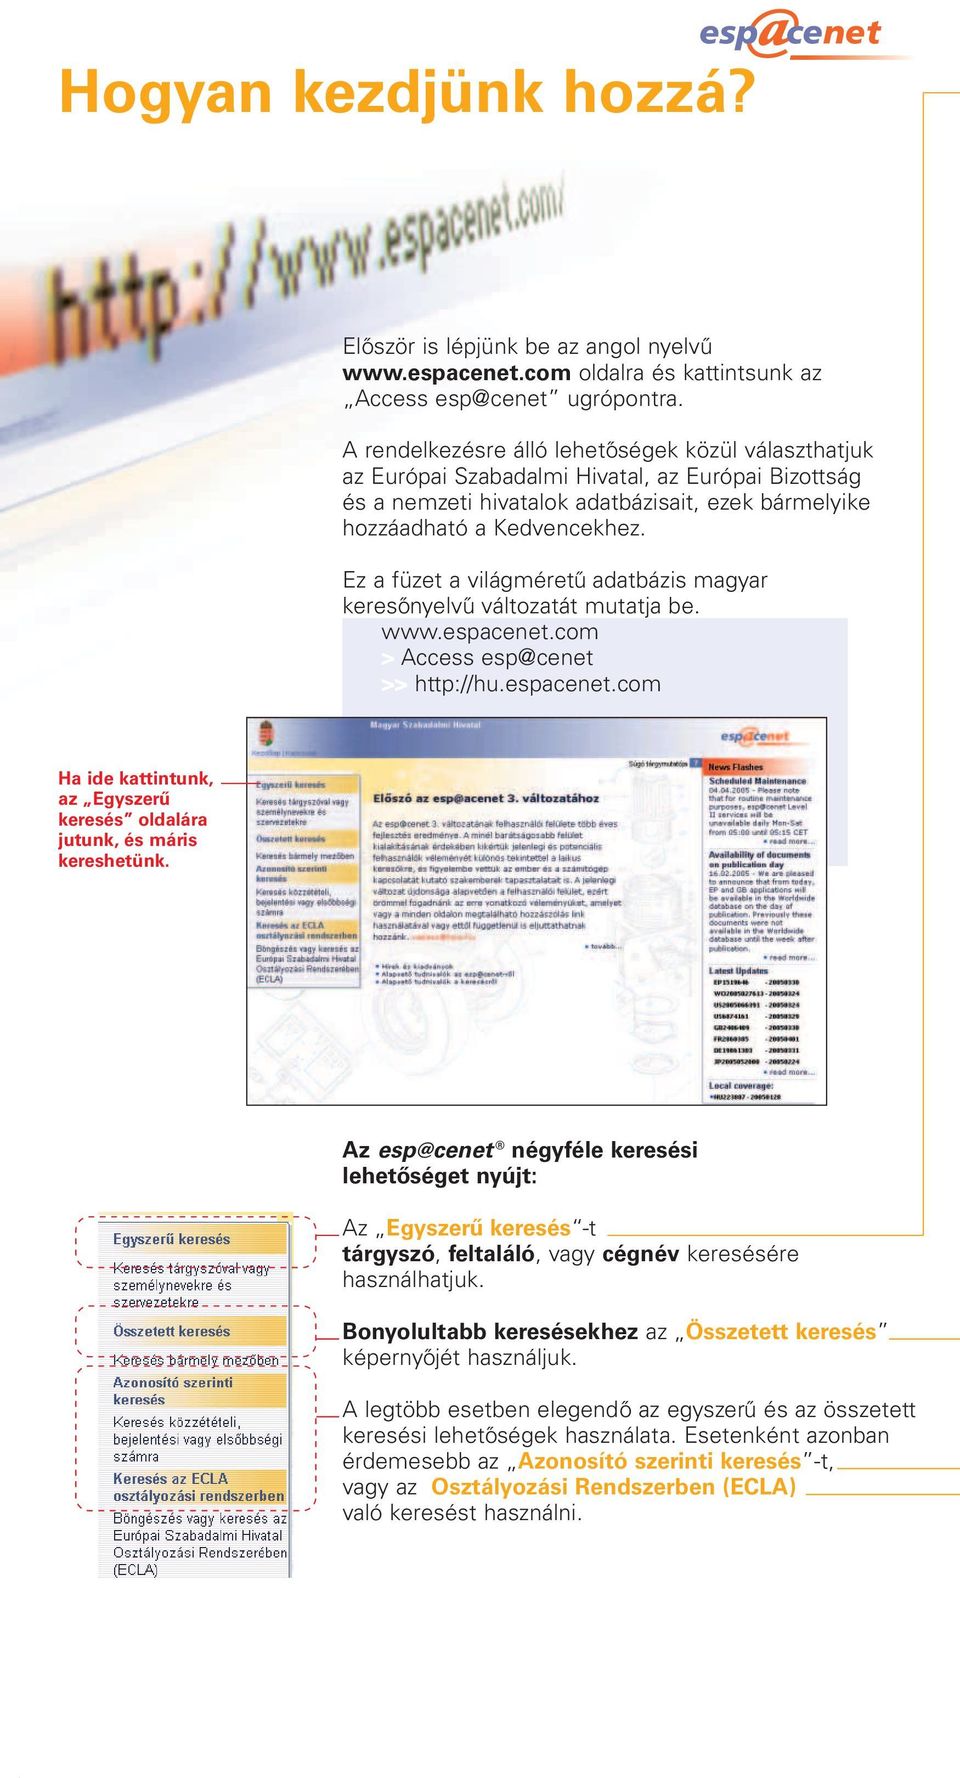 Ez a füzet a világméretű adatbázis magyar keresőnyelvű változatát mutatja be. > Access esp@cenet >> http://hu.espacenet.